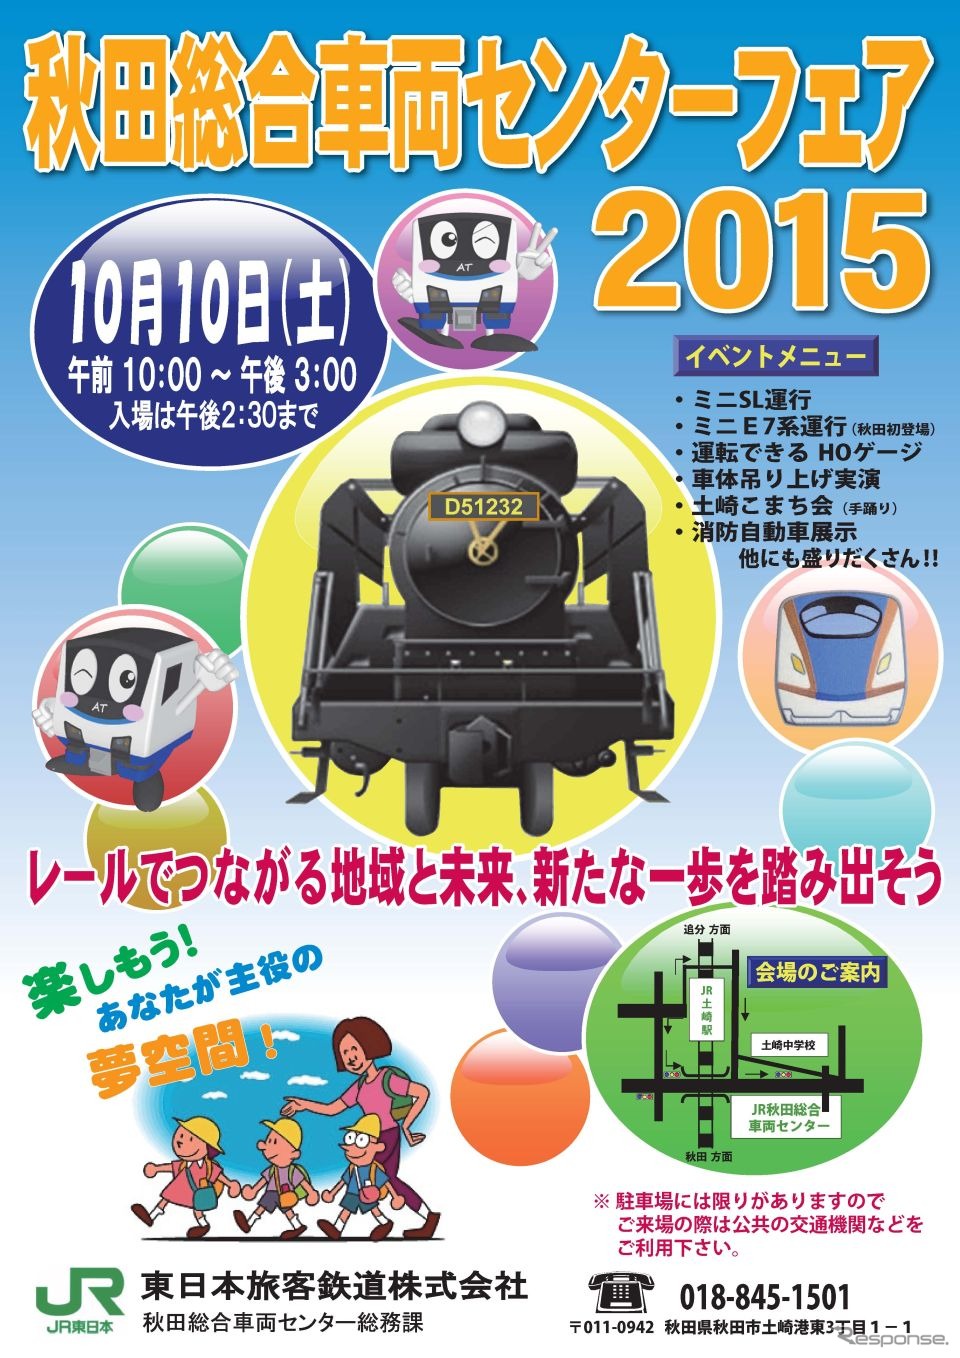 「秋田総合車両センターフェア2015」の案内。こちらは10月10日に行われる。